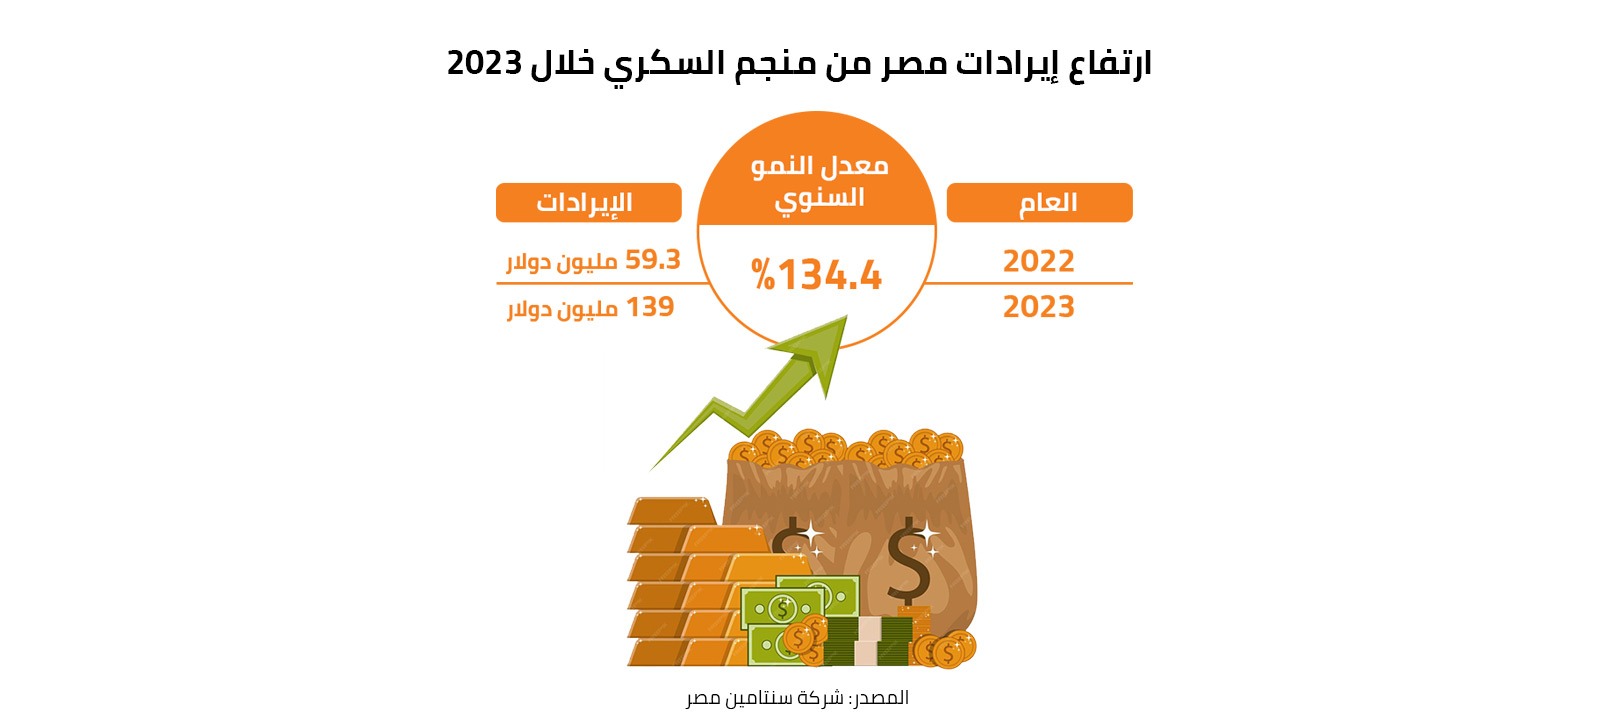 ارتفاع إيرادات مصر من منجم السكري خلال 2023 